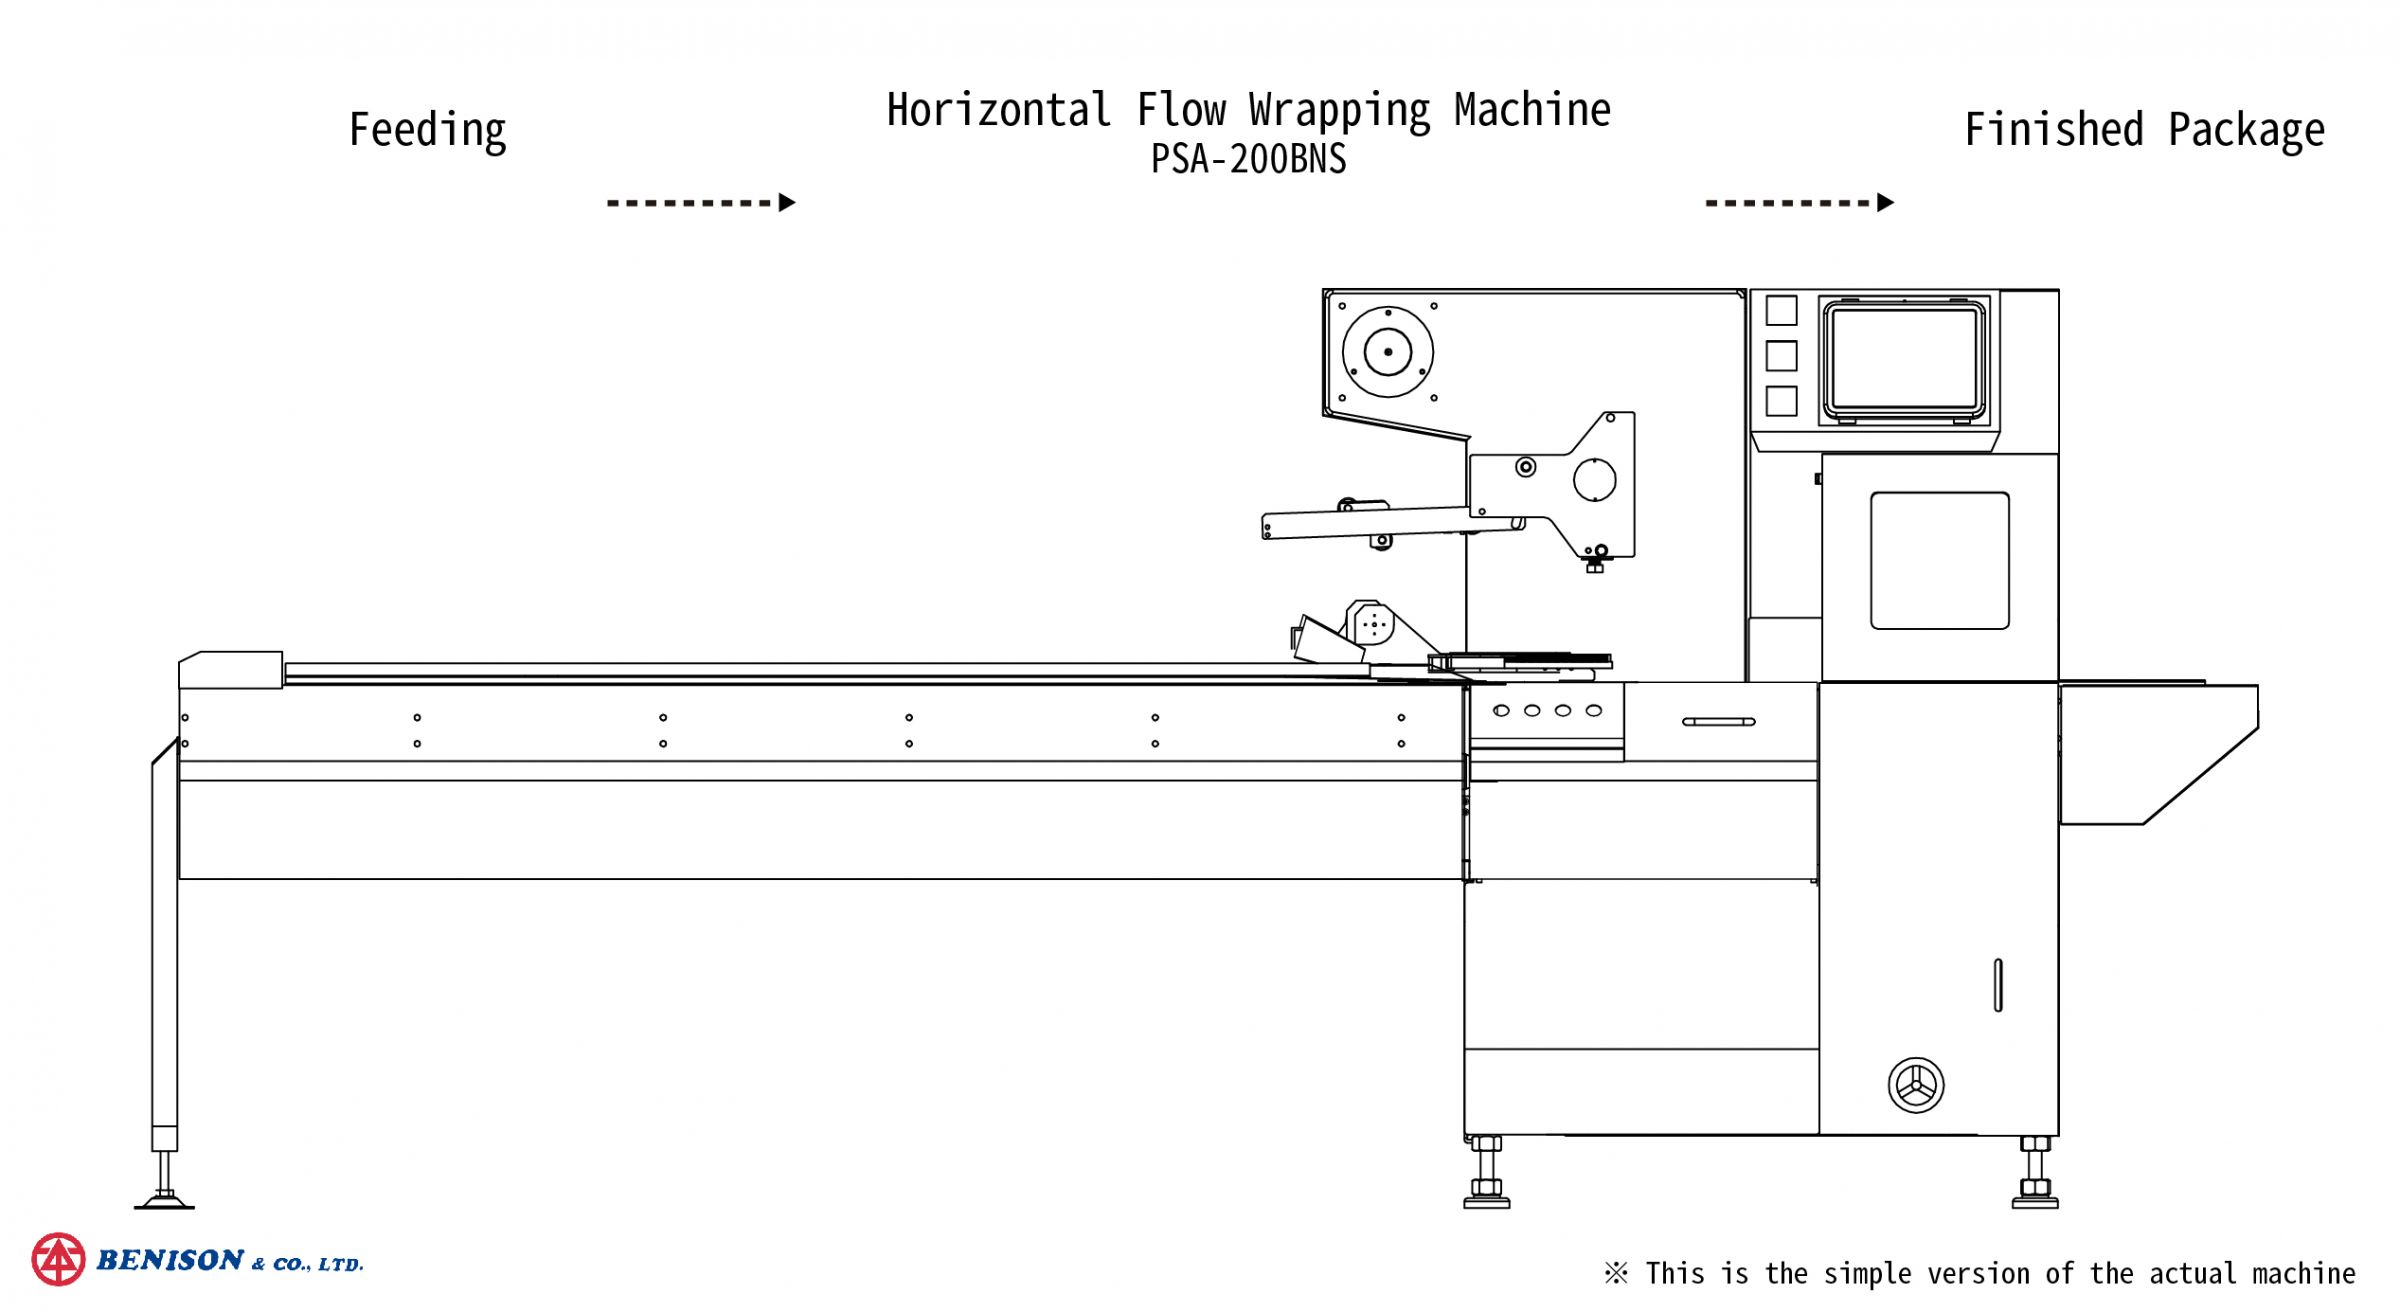 마스크 포장 솔루션을 위한 수평형 플로우 랩핑 기계, PSA-200BNS